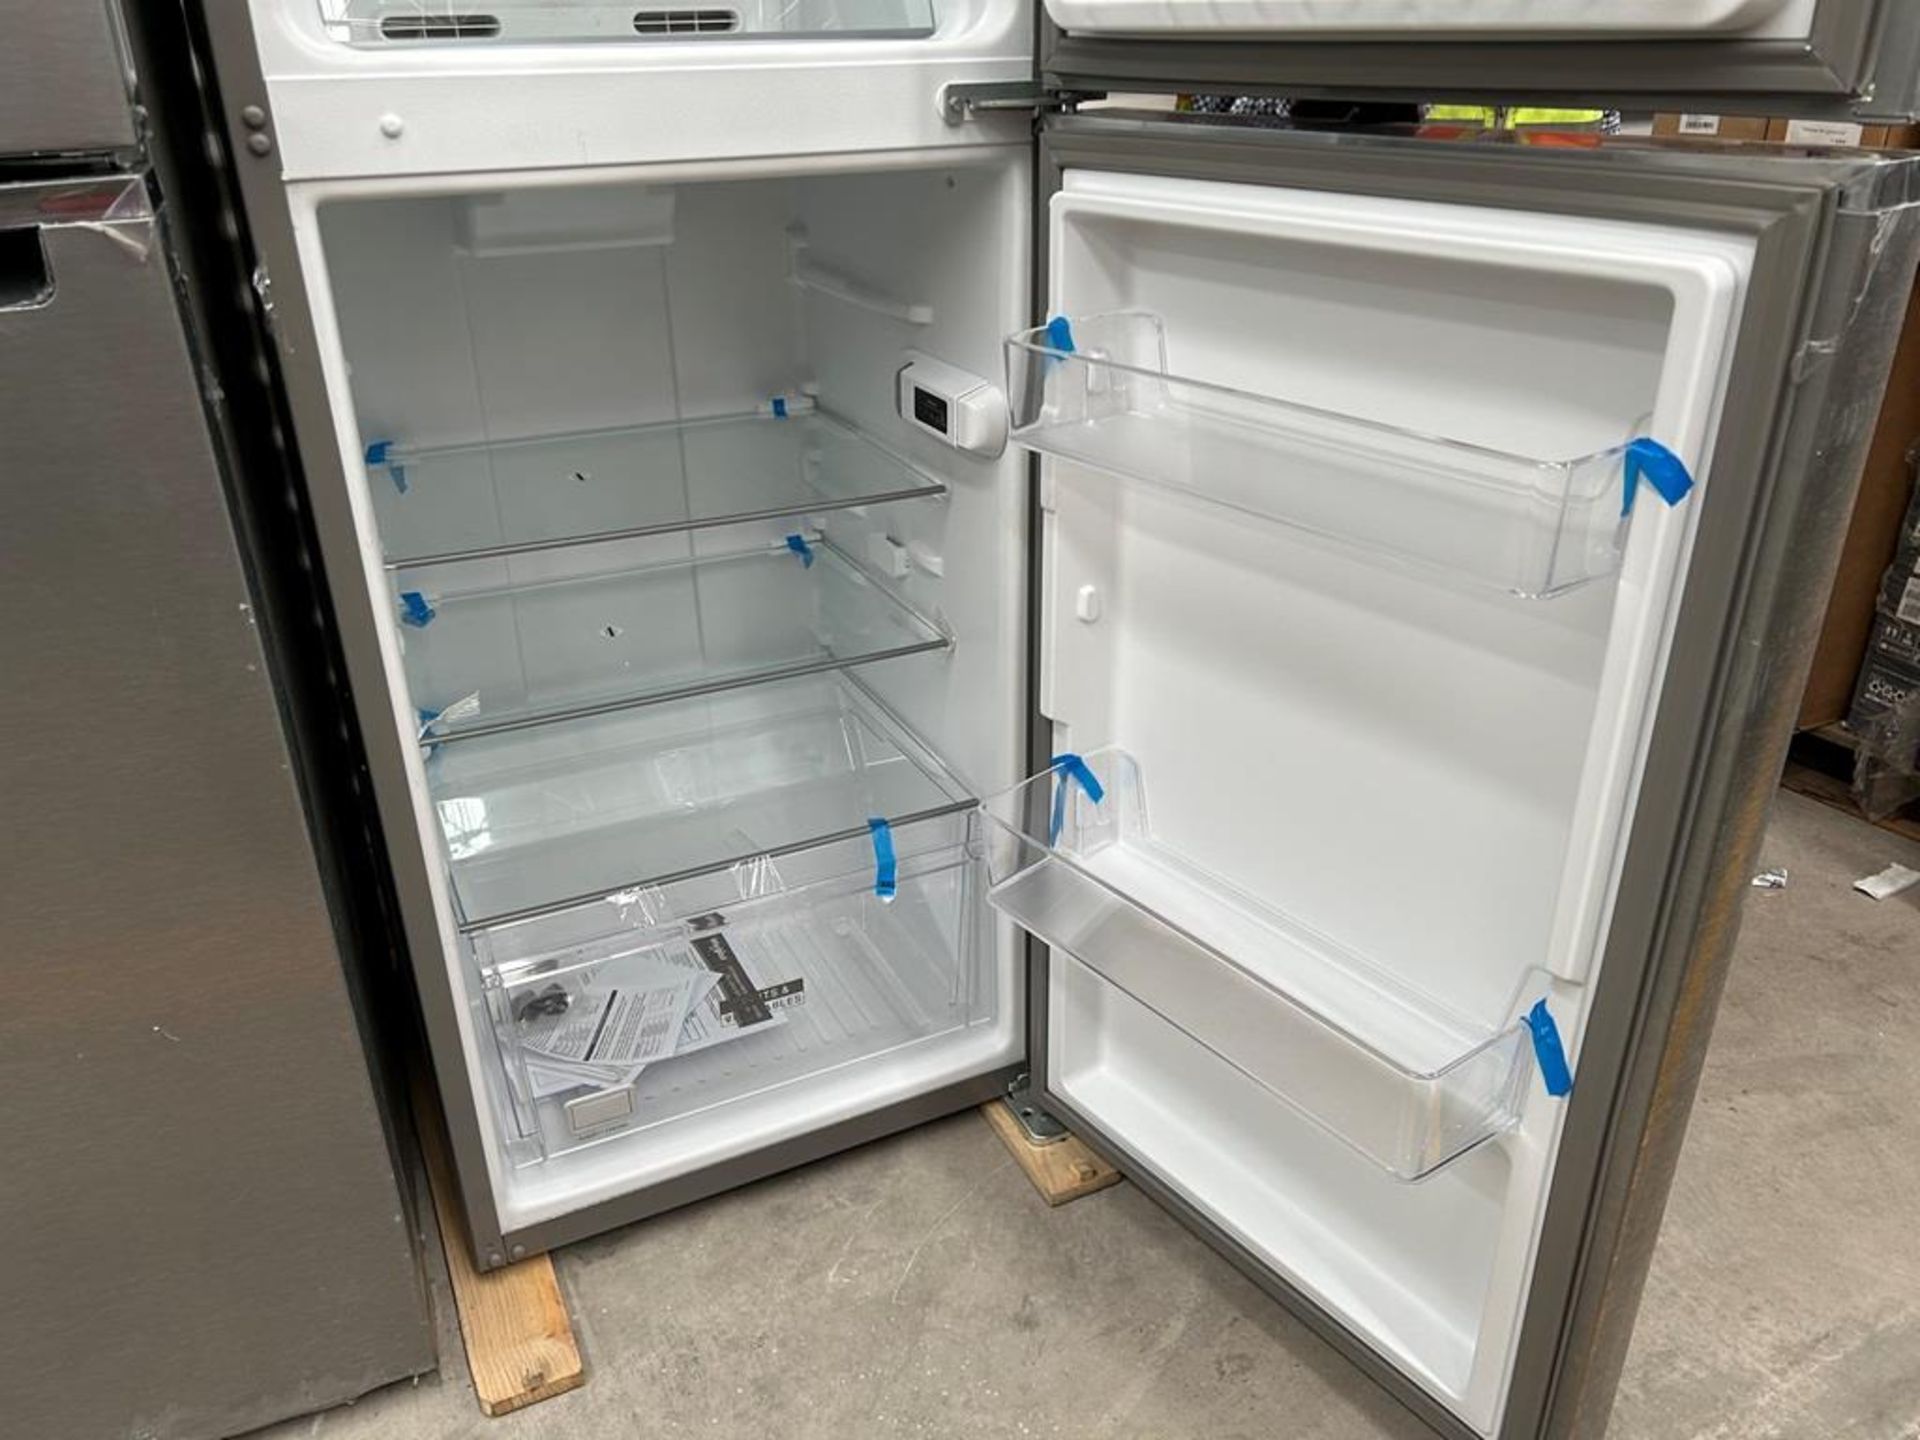 Lote de 2 refrigeradores contiene: 1 Refrigerador Marca WHIRPOOL, Modelo WT1230K, Serie 91306, Colo - Image 12 of 17